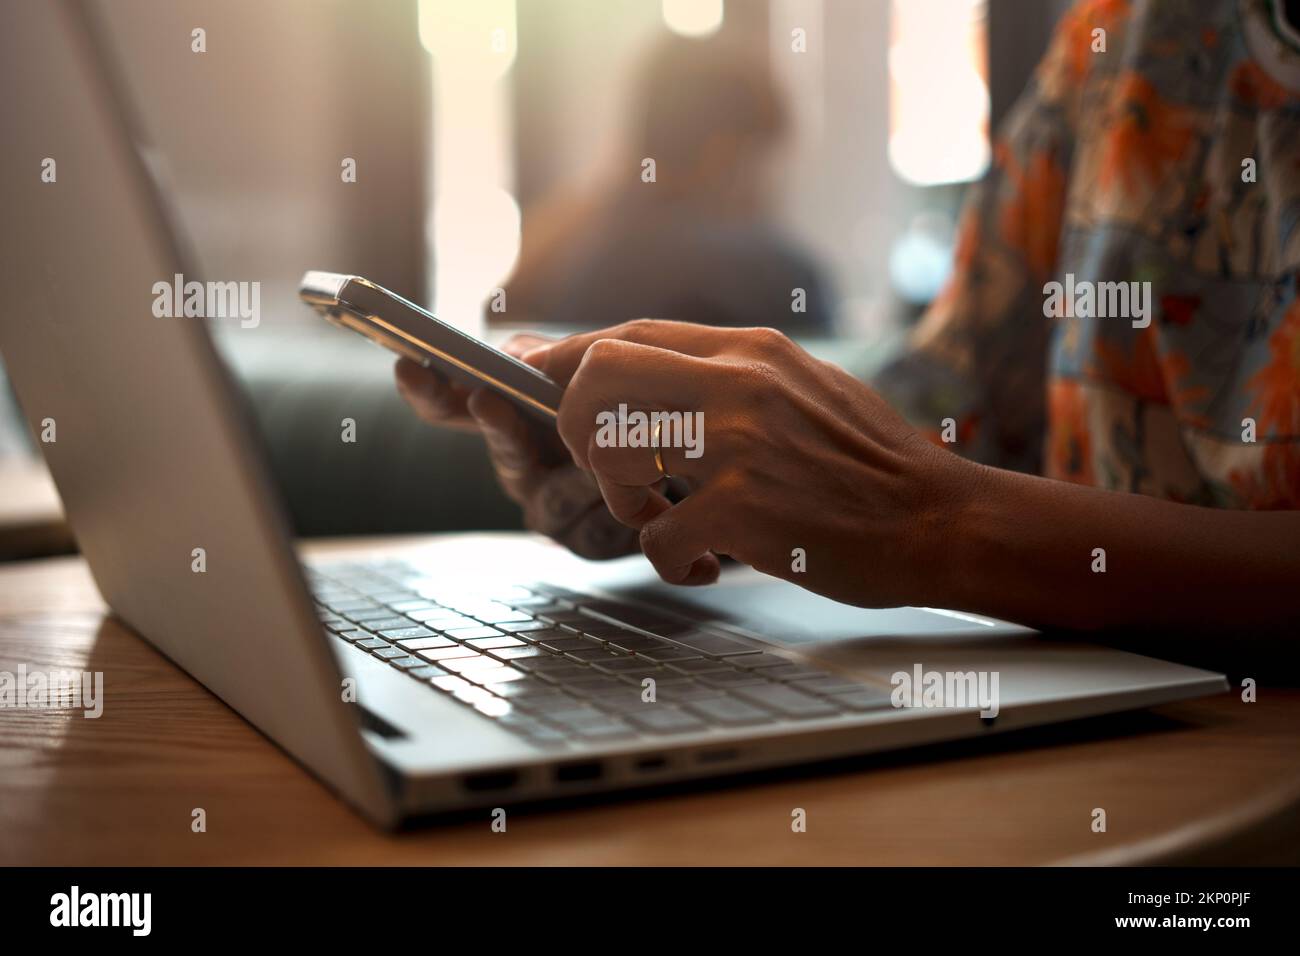 Gros plan de la main d'une femme utilisant un smartphone tout en travaillant sur un ordinateur portable dans un café. Banque D'Images